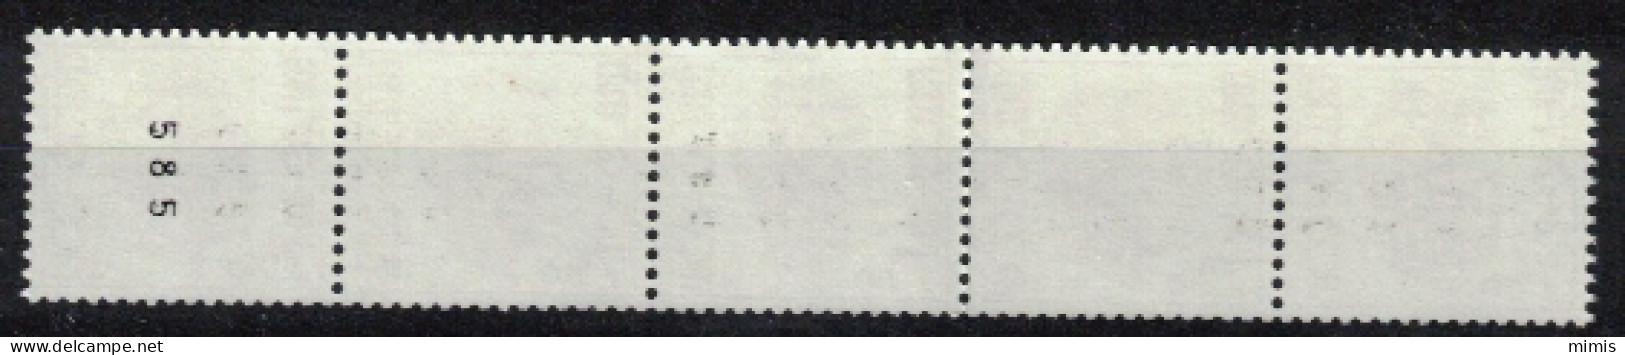 BELGIQUE   1982   R72  Bande De 5  N° 585 ** Sans Charnière - Coil Stamps